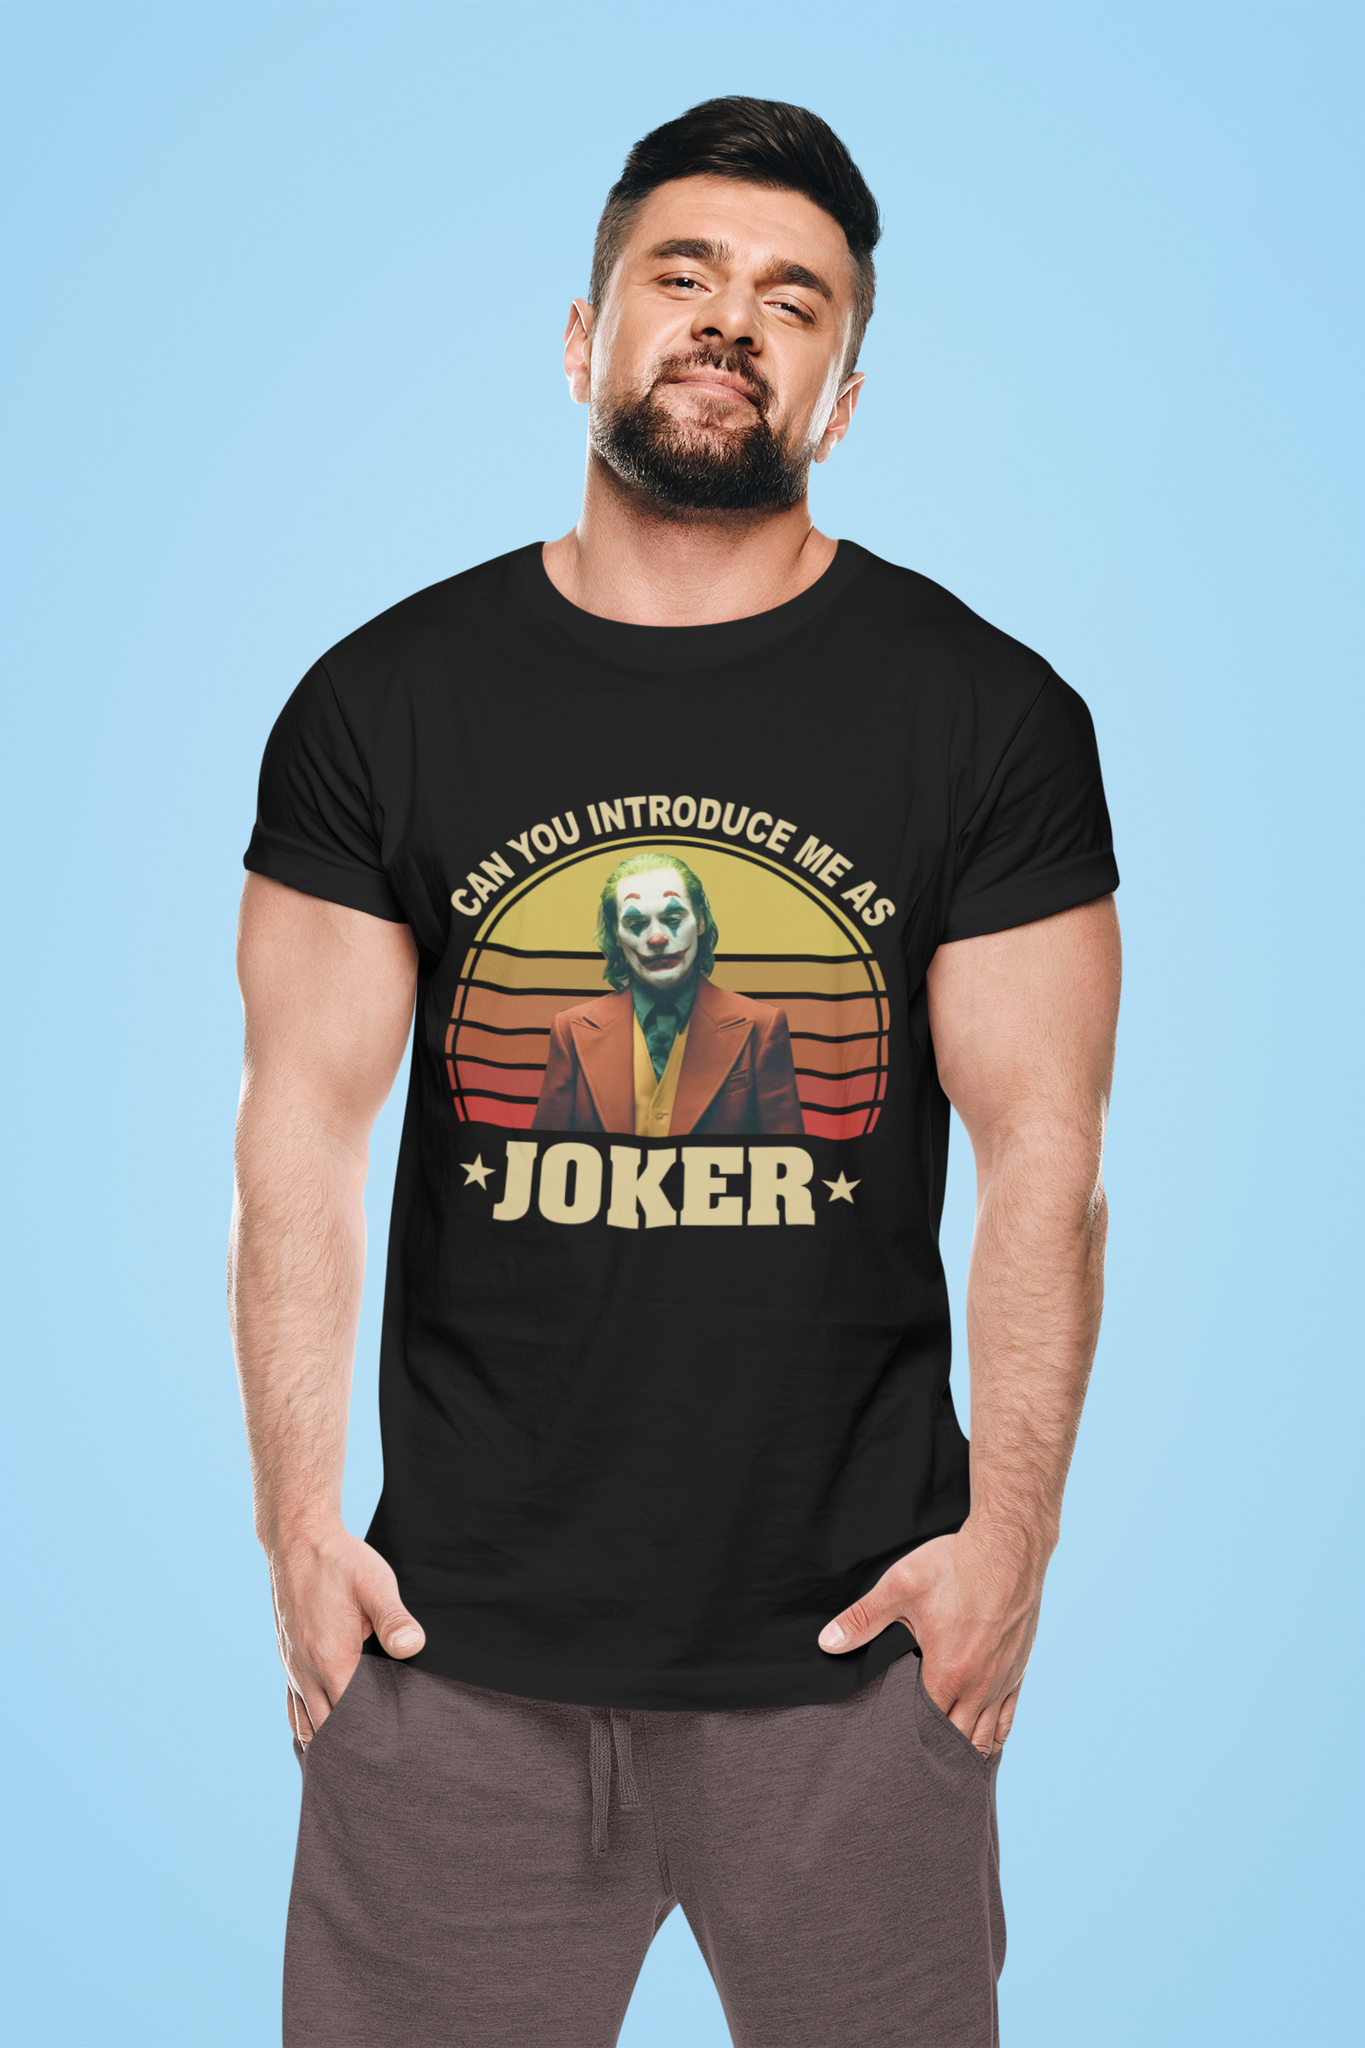 Joker Vintage T Shirt, Joker The Comedian T Shirt, Can You Introduce Me As Joker Tshirt, Halloween Gifts